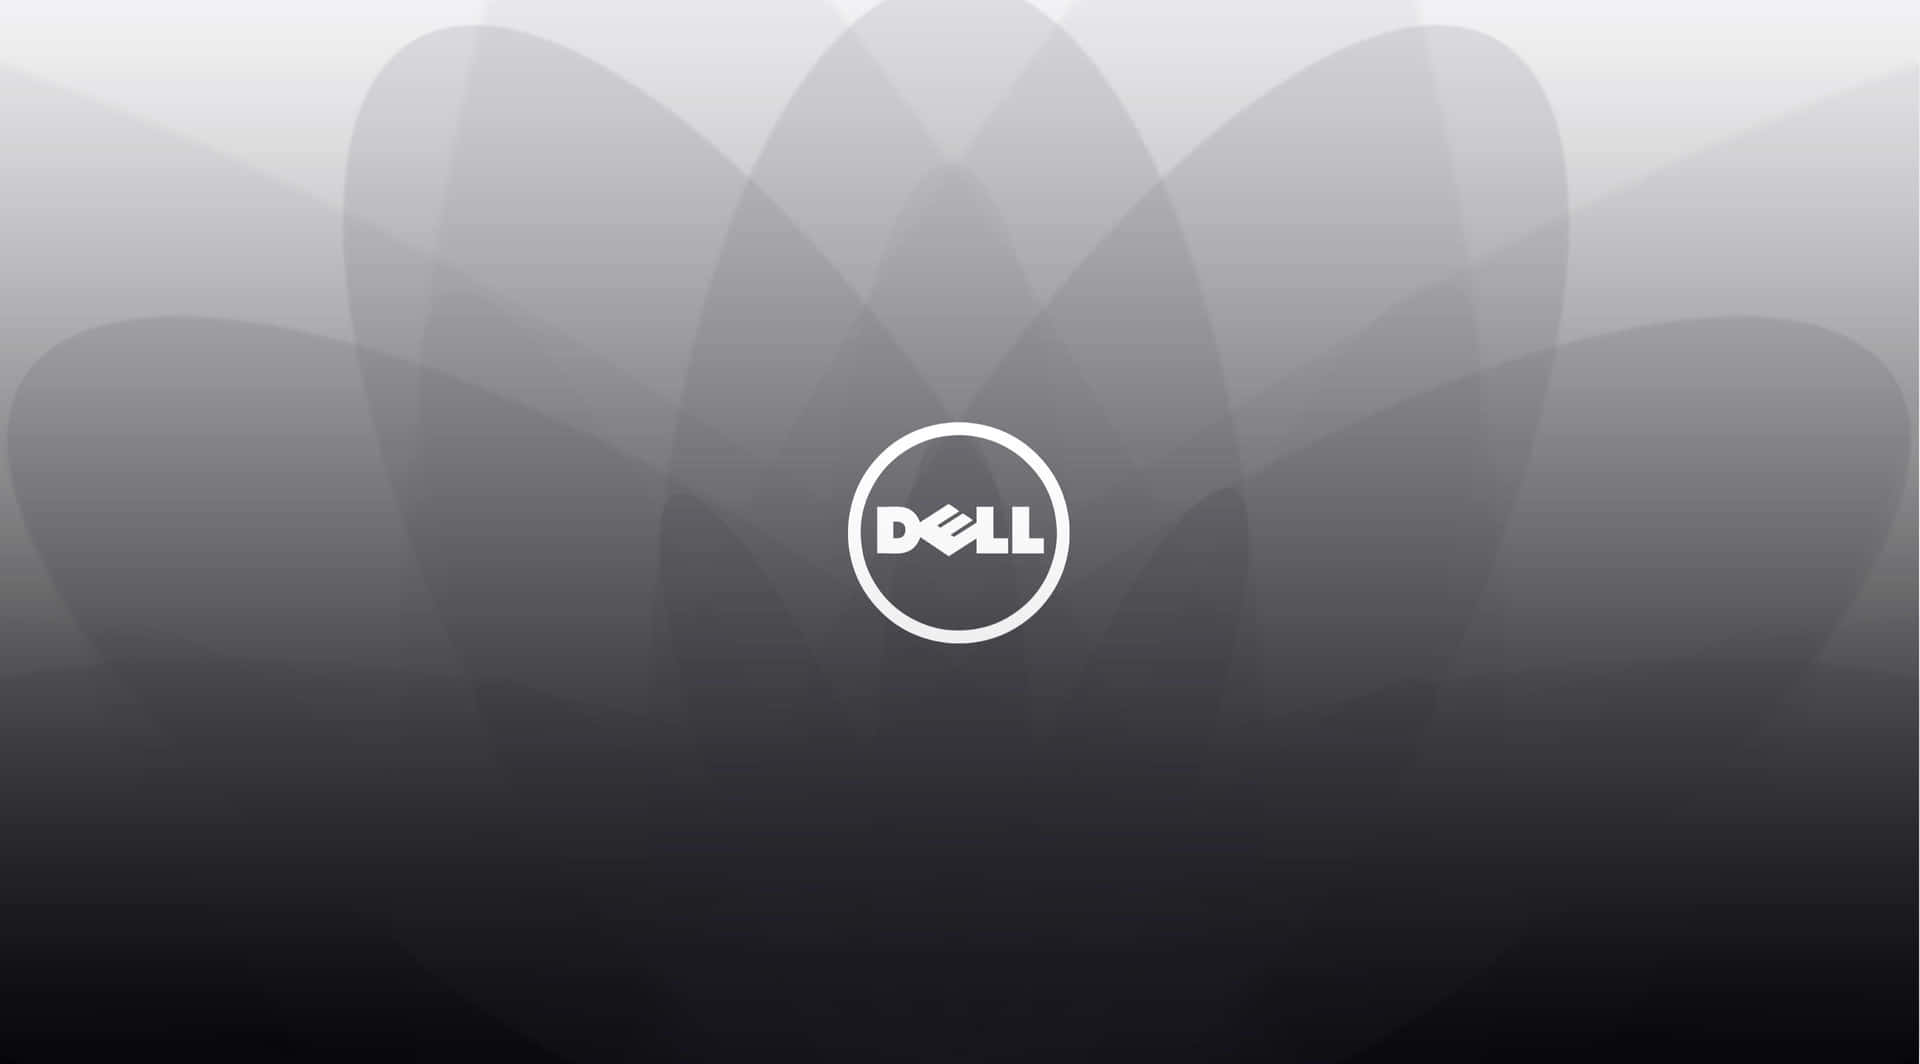 Delllogotyp På En Svart Bakgrund